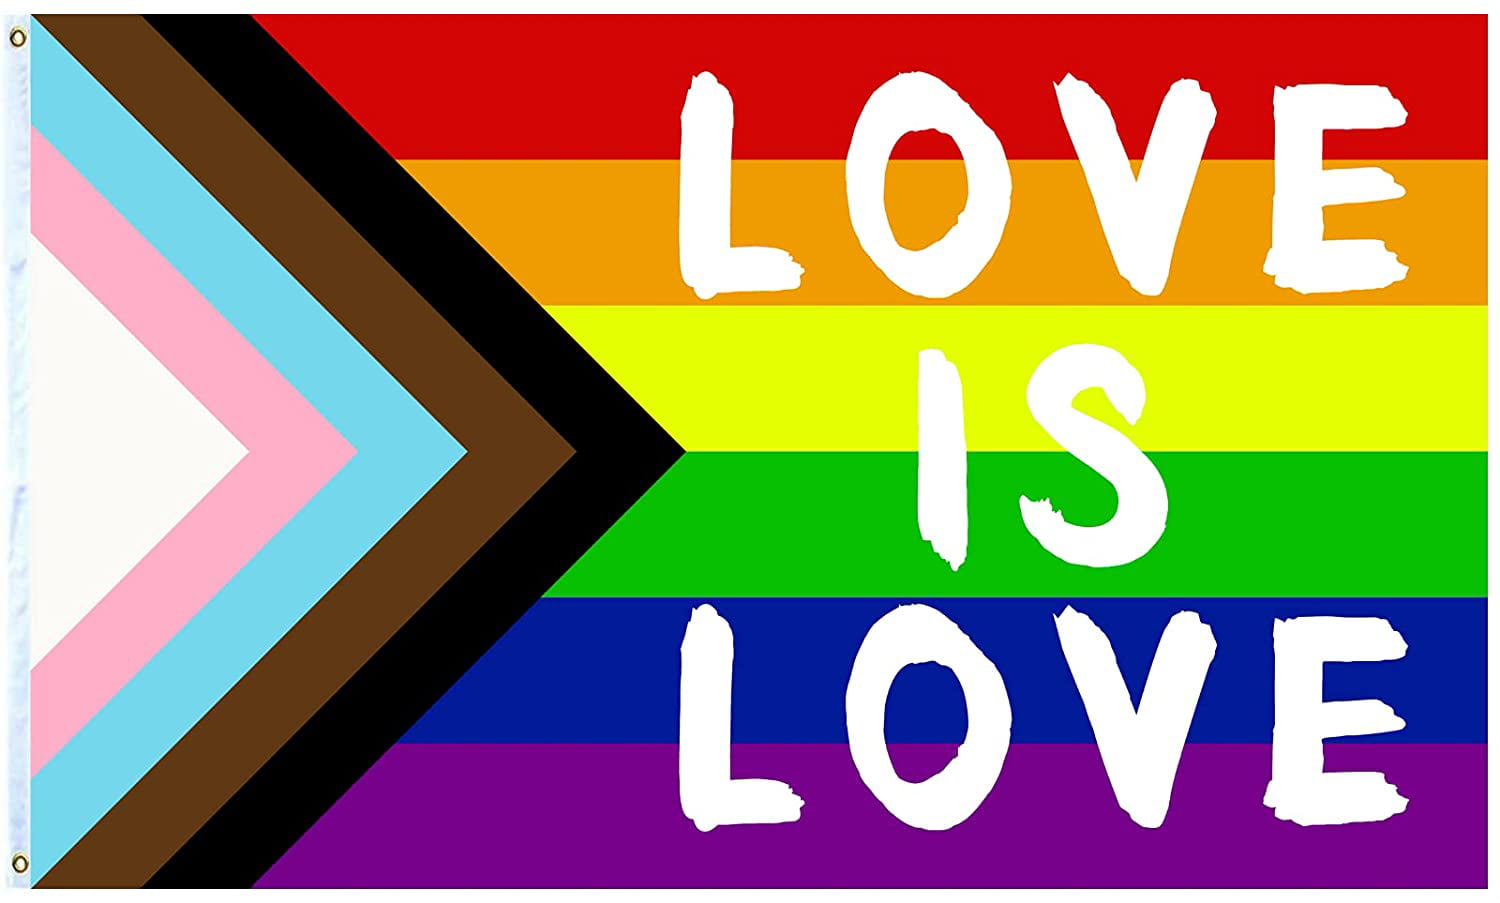 gay pride rainbow flag photos